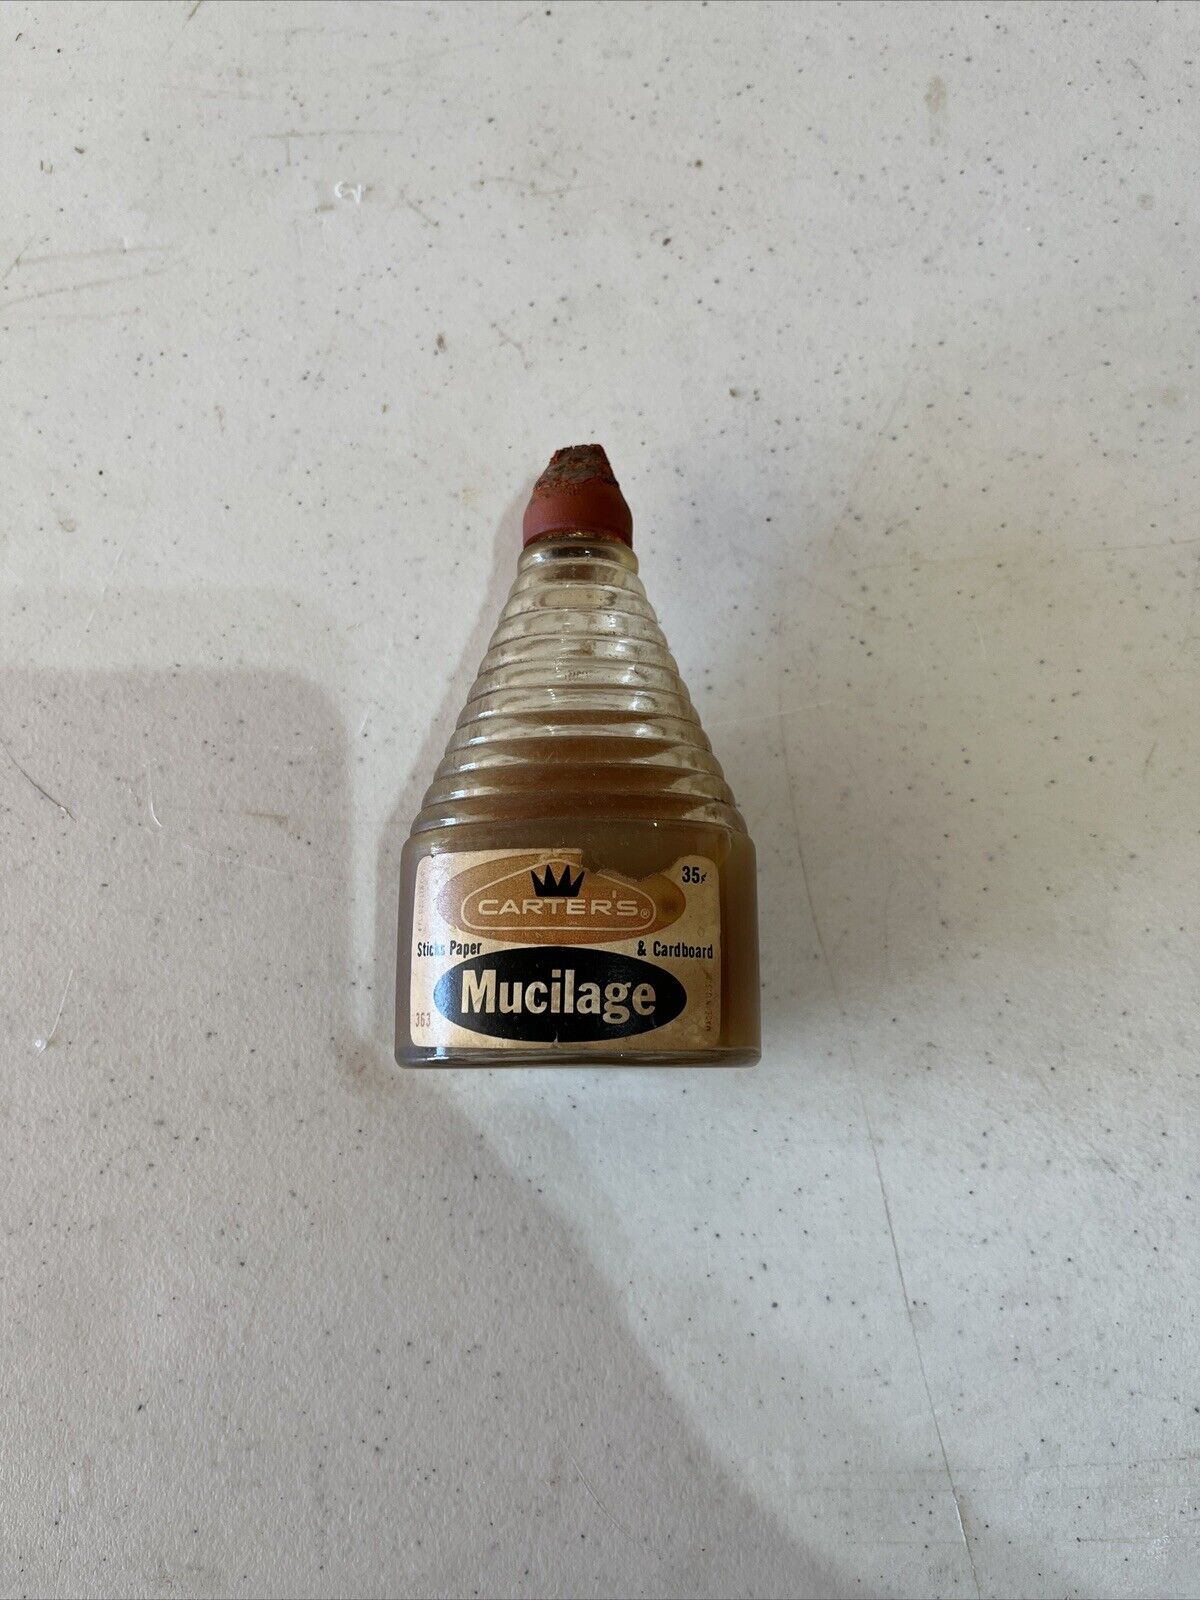 Vintage Carter’s Mucilage Bottle